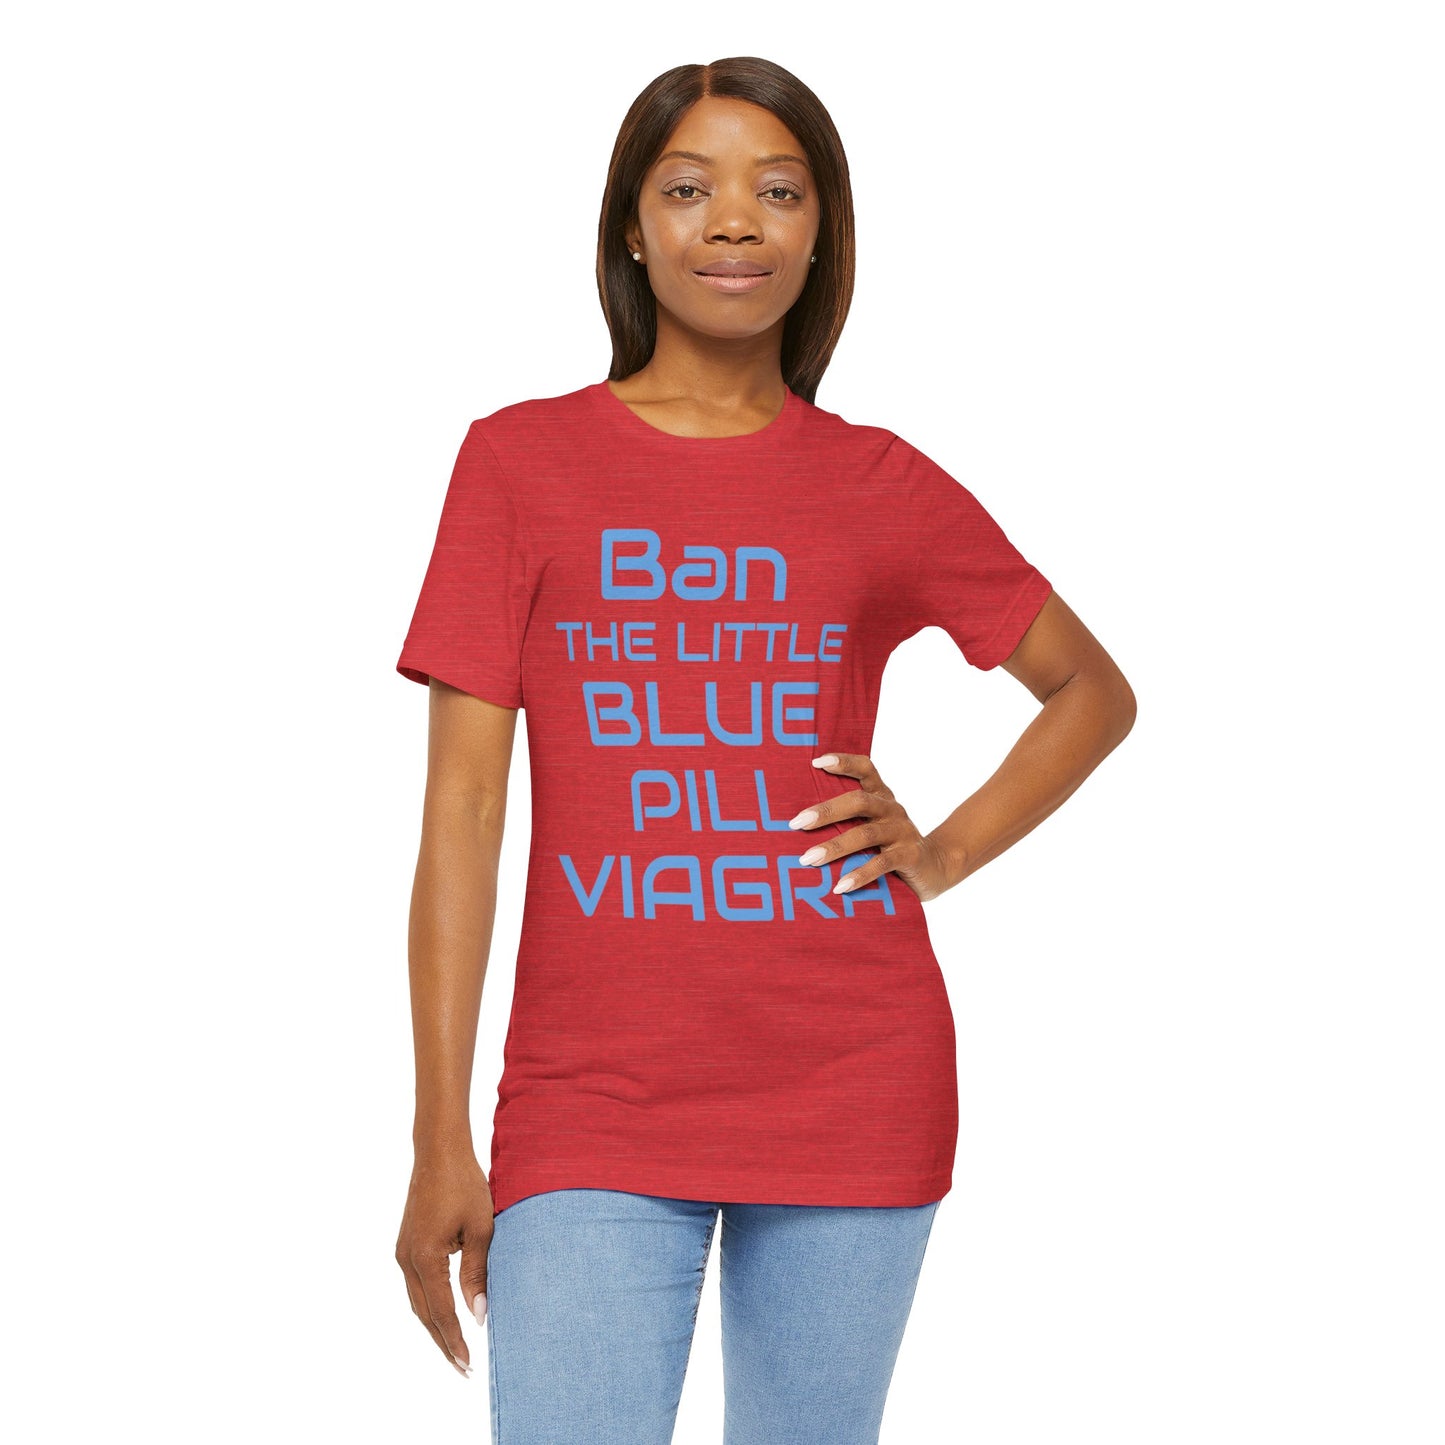 Ban The Little Blue Pill Viagra